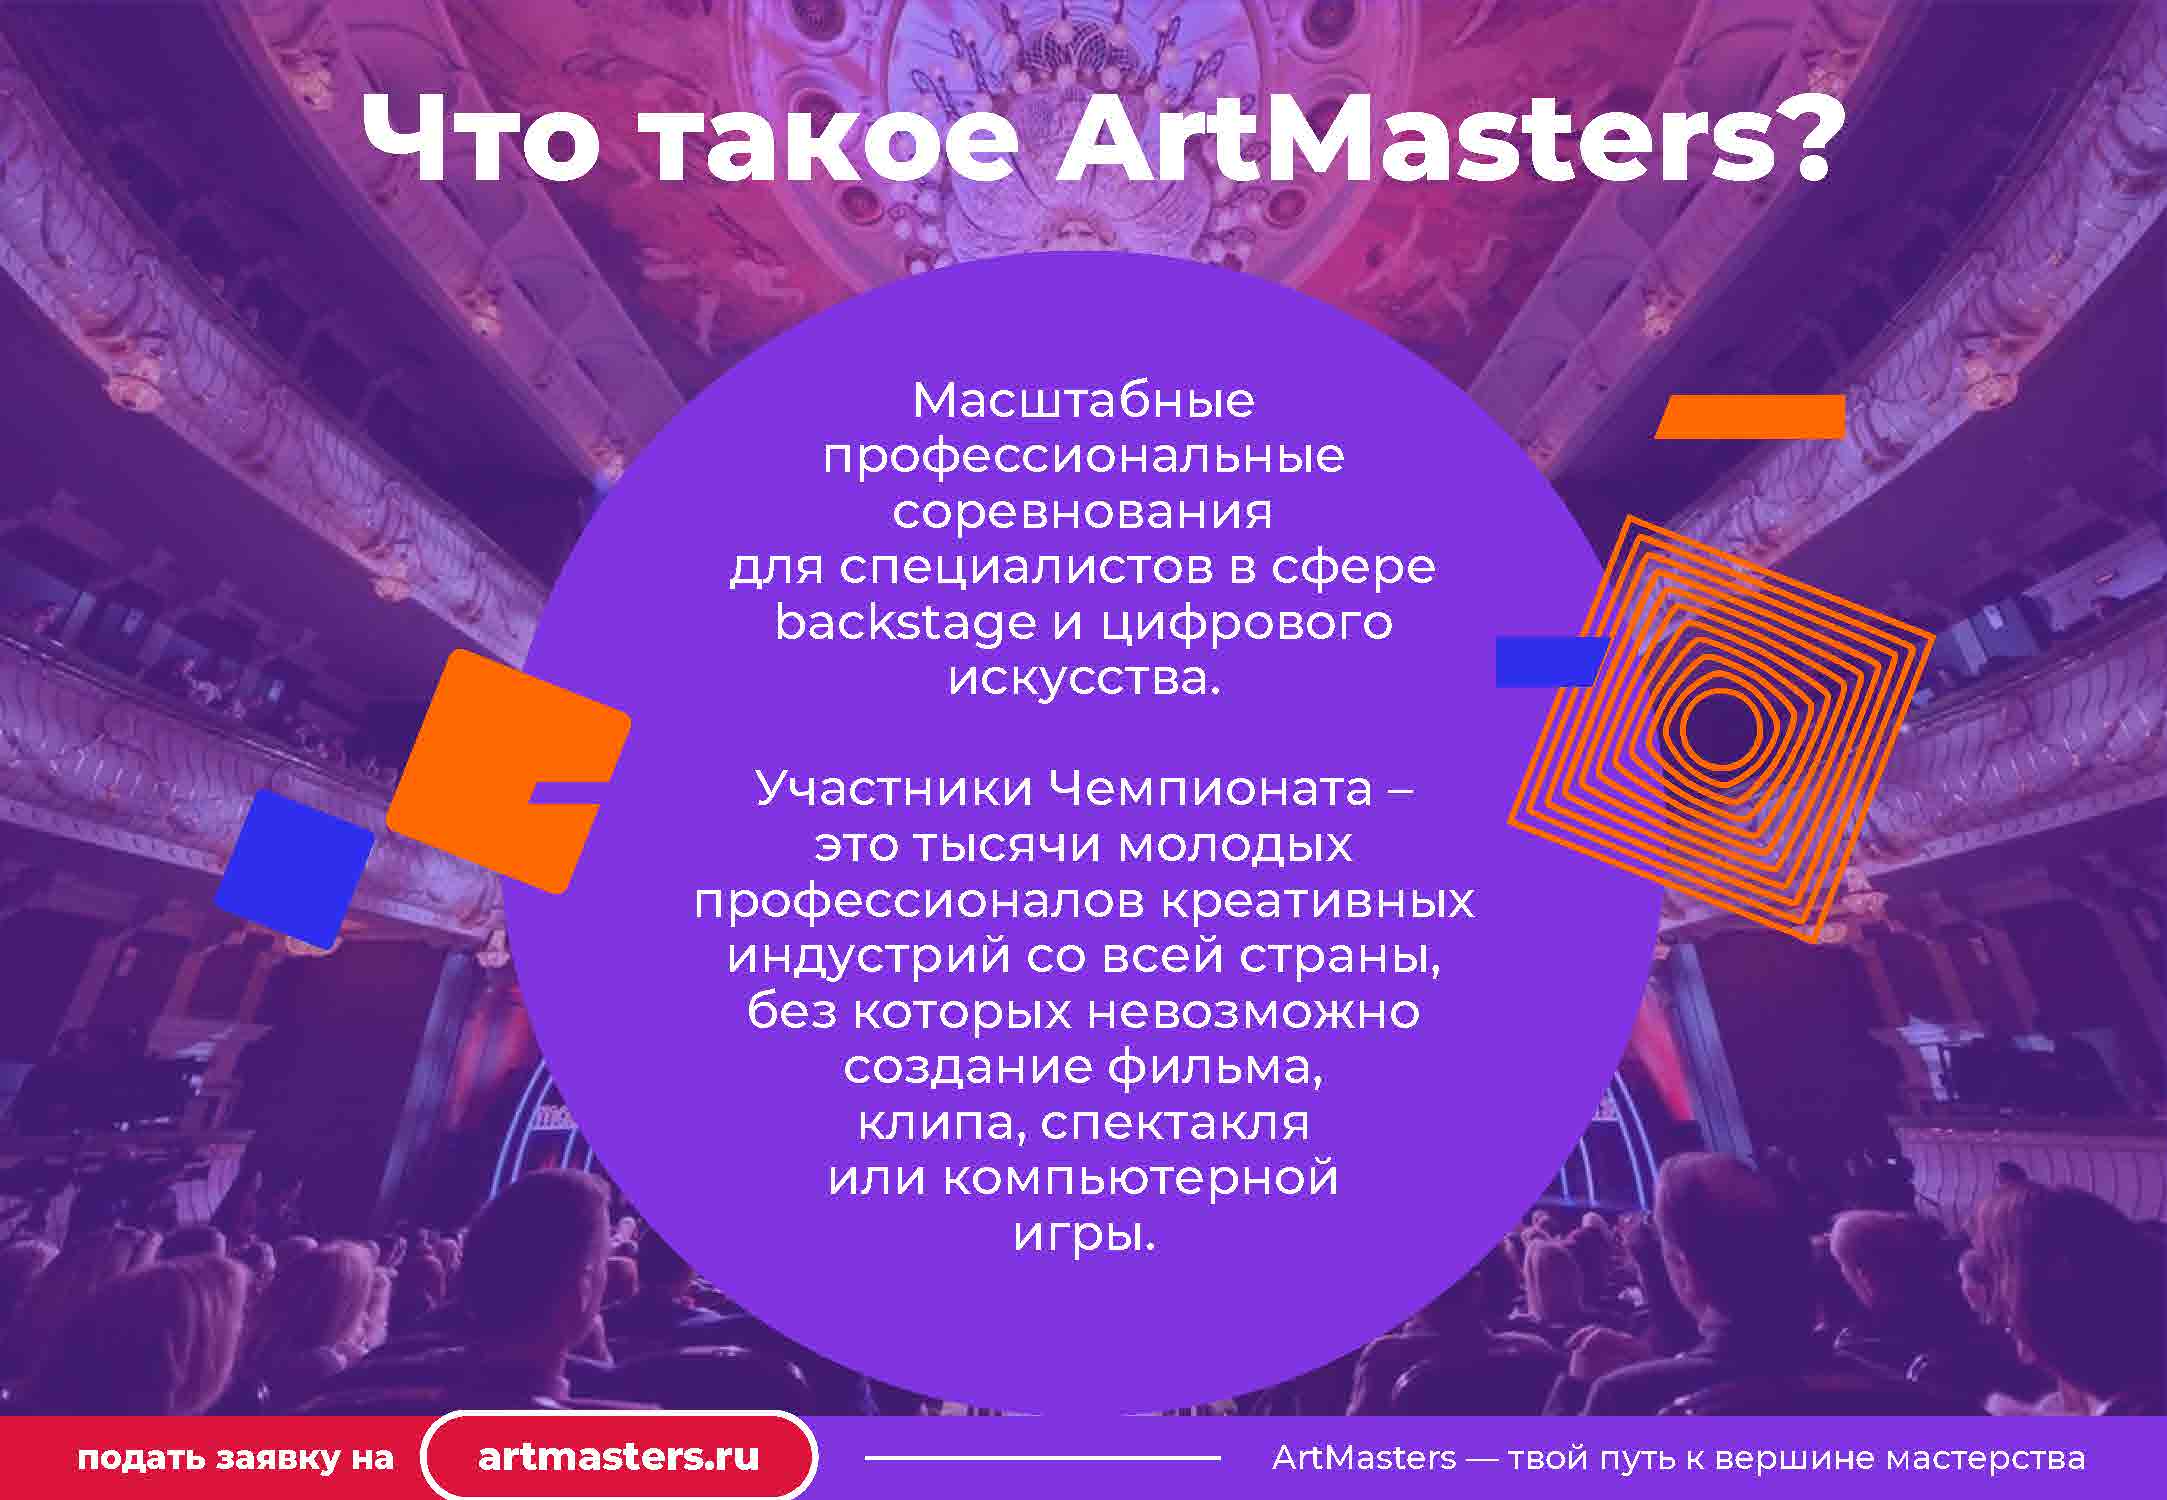 Национальный открытый чемпионат творческих компетенций. Творческие компетенции это. Artmasters.